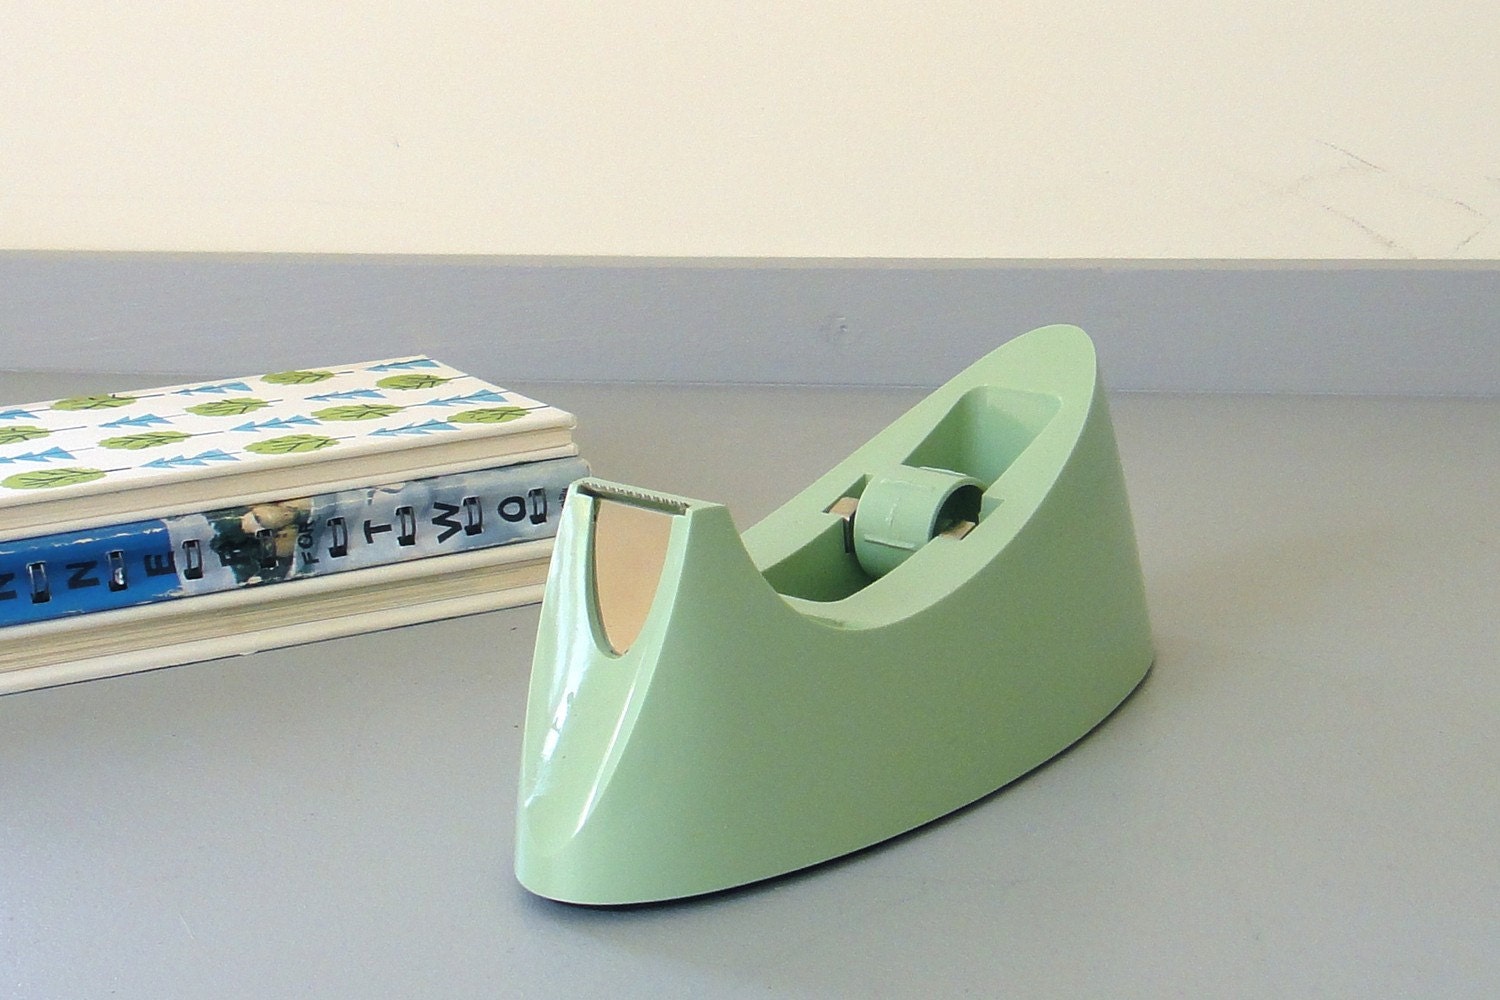 green tape dispenser